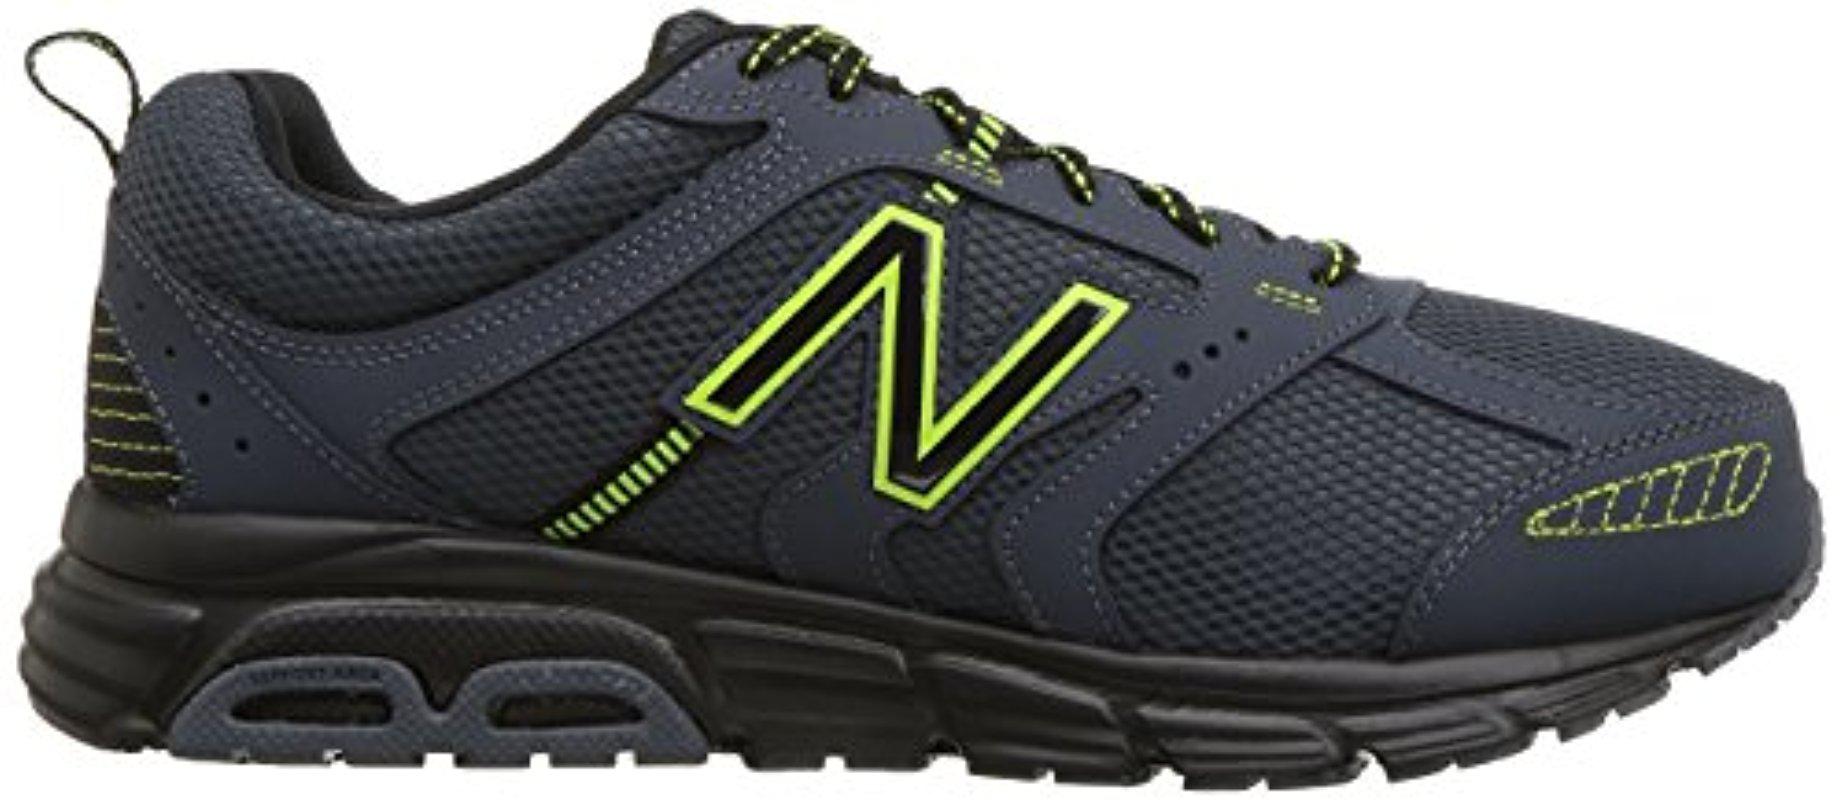 New Balance Rubber 430 V1 Running Shoe in Black for Men - Lyst